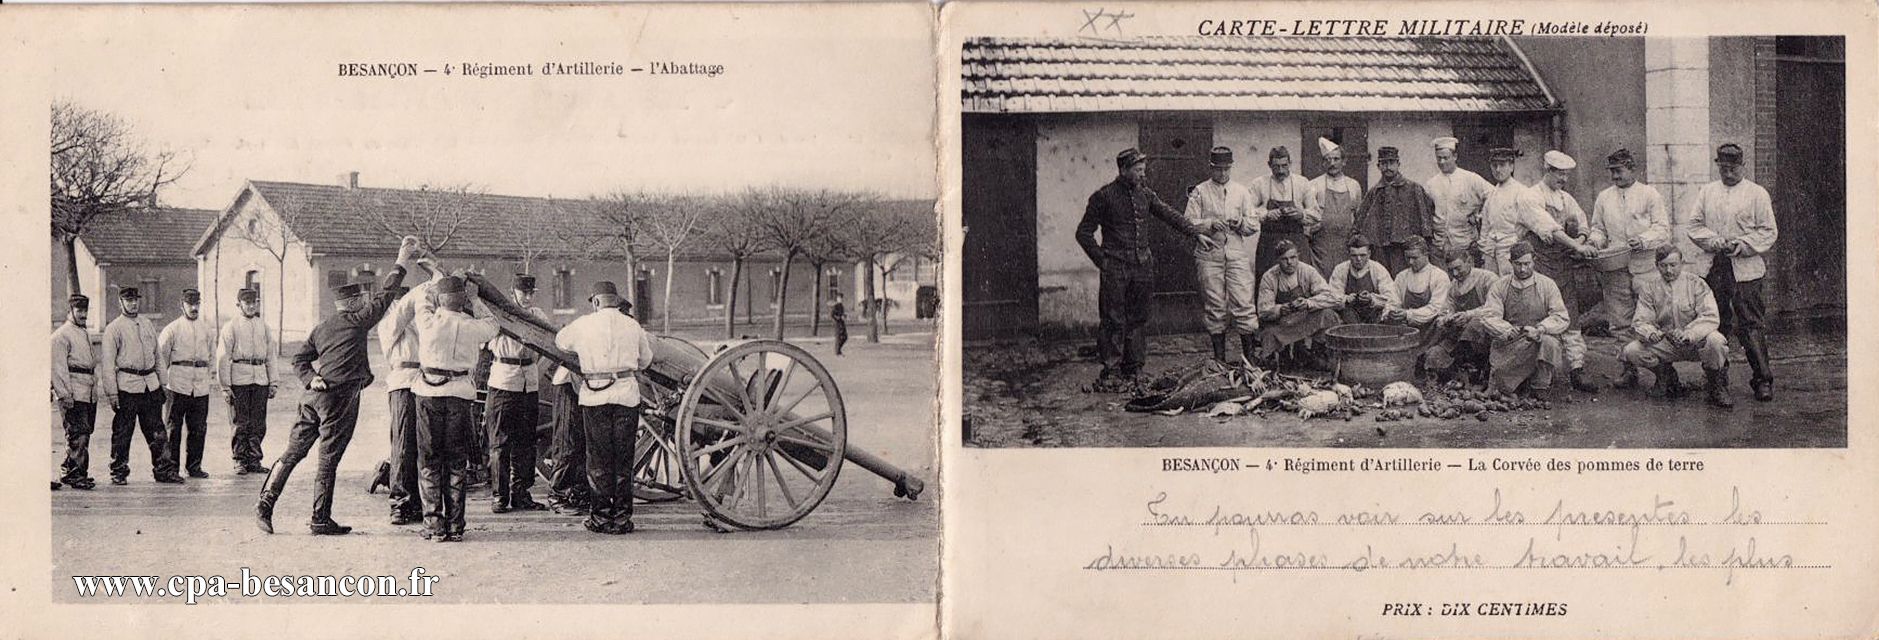 CARTE-LETTRE MILITAIRE - BESANÇON - 4e Régiment d Artillerie - L Abattage & 4e Régiment d Artillerie - La Corvée des pommes de terre